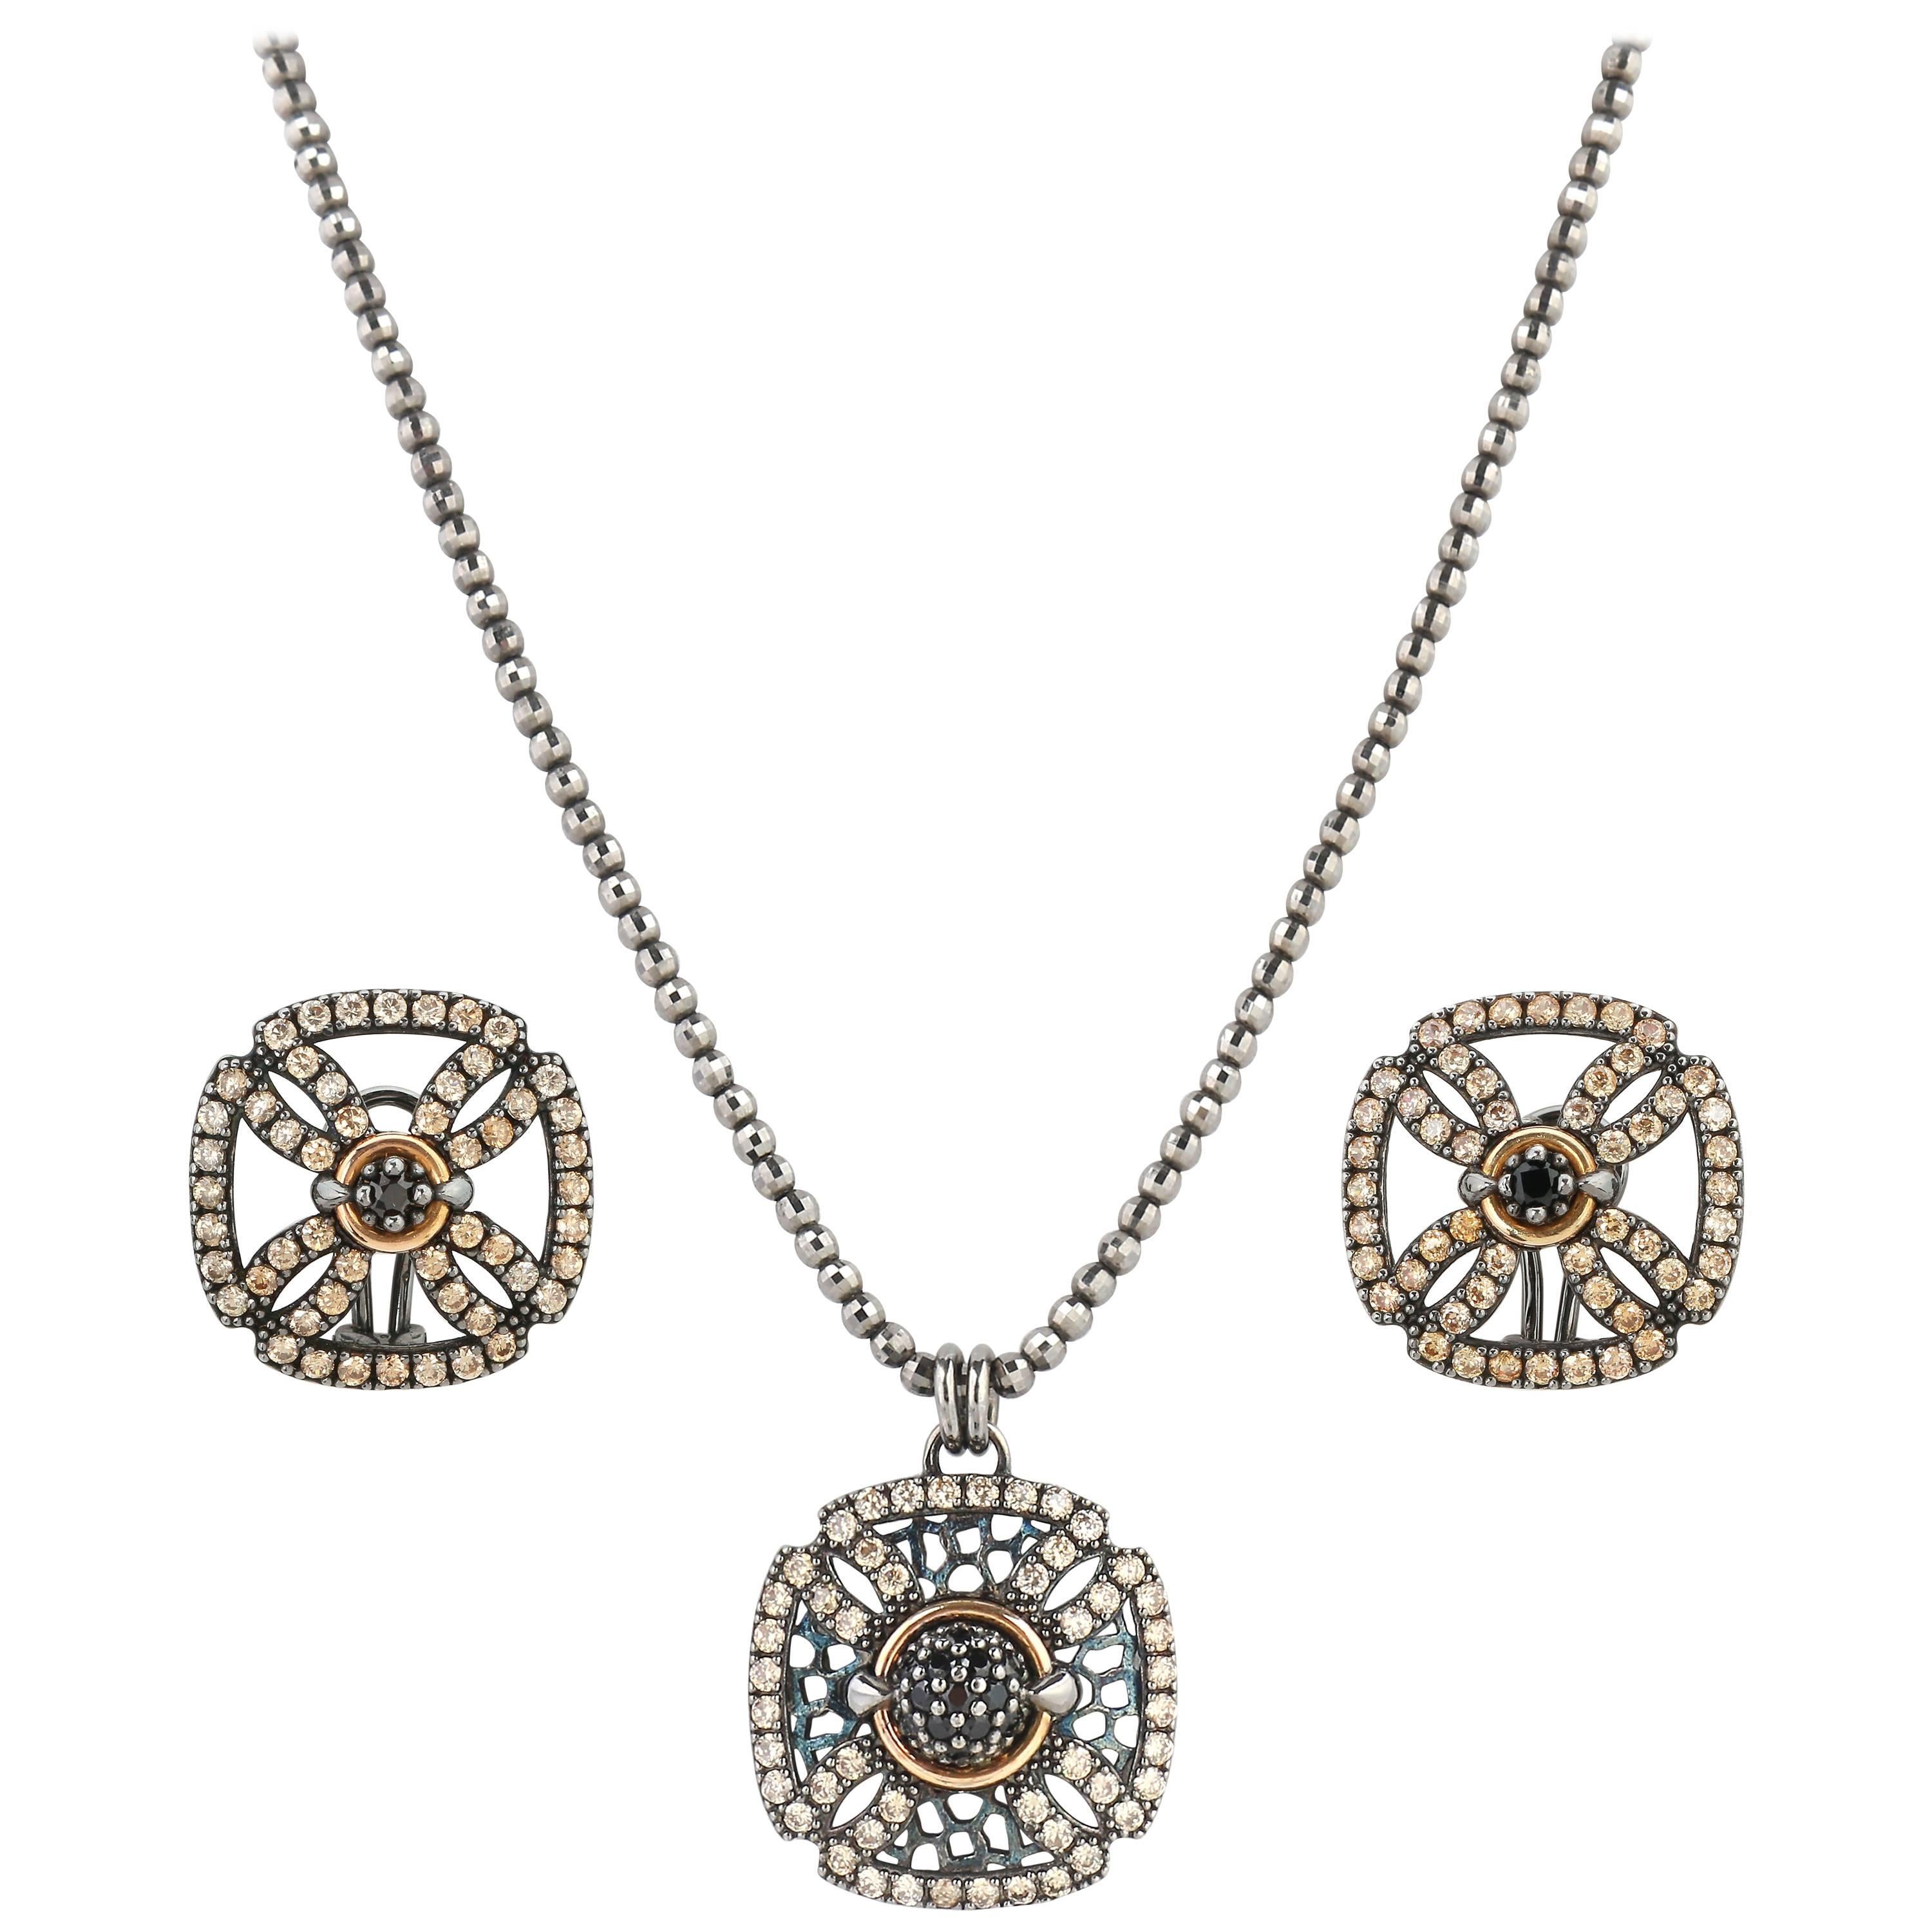 BOHEMME A/W 2012 "Croix" Diamond 18K Sterling Pendant Necklace Earring Parure